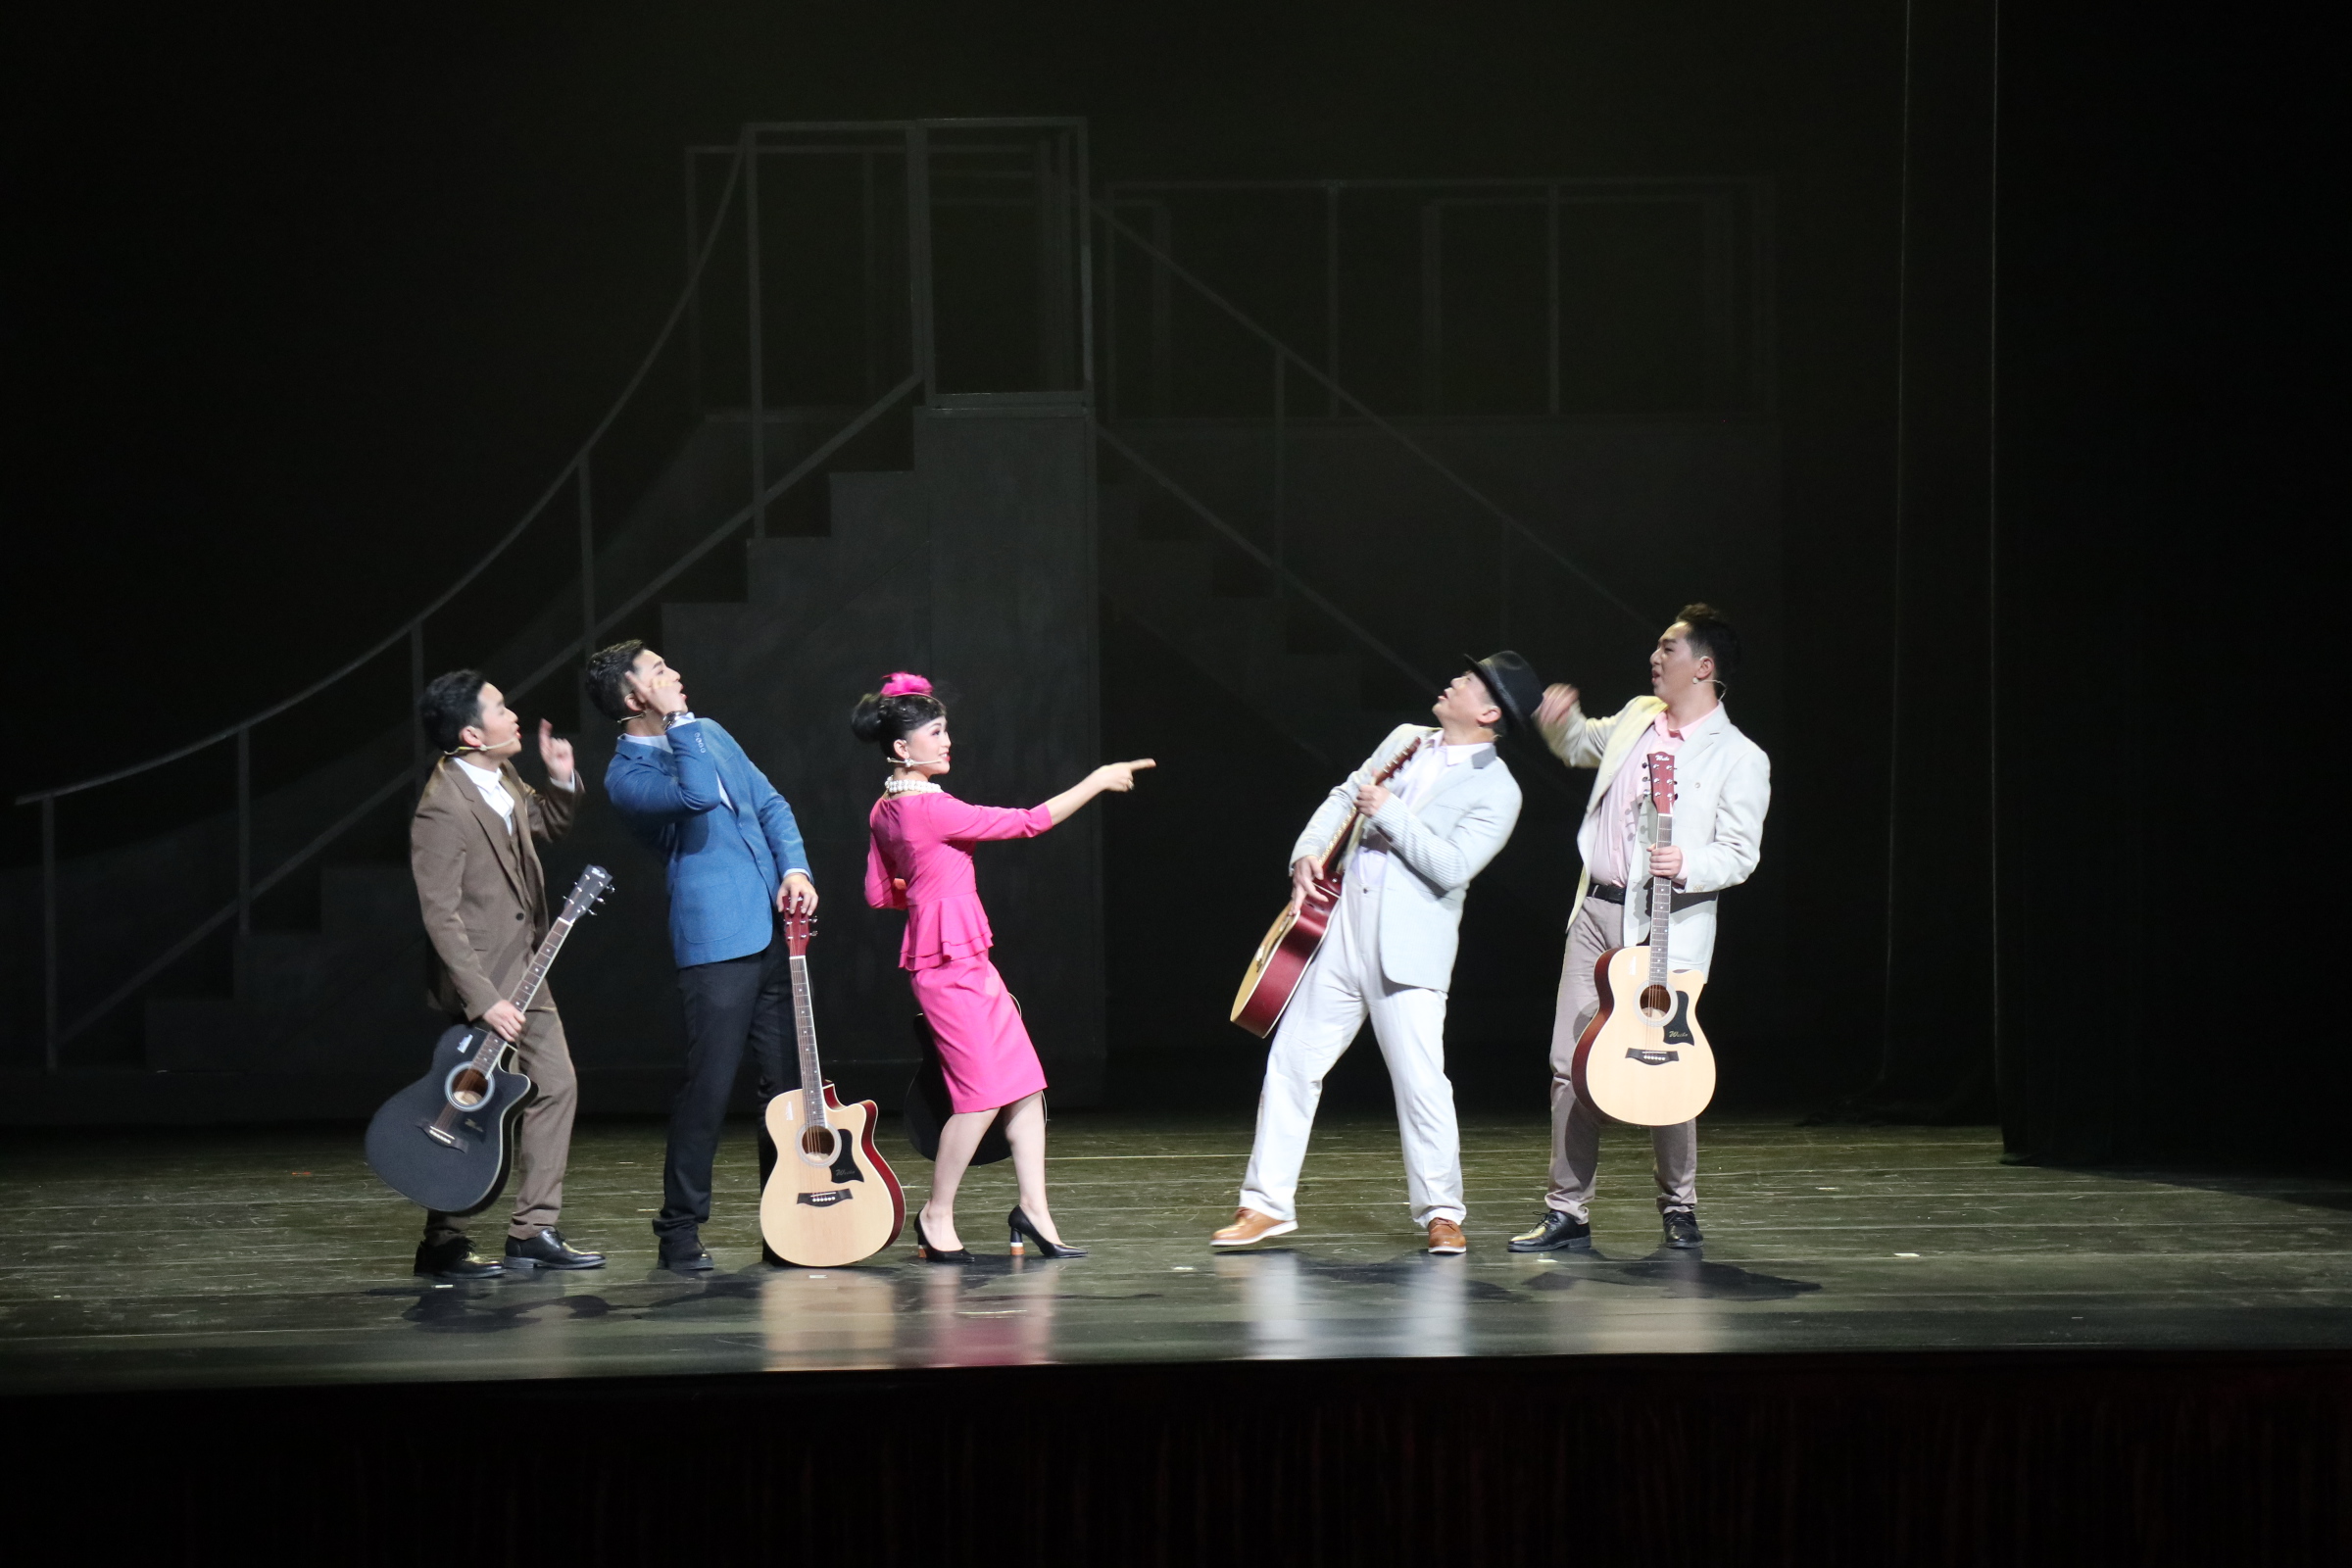 Musical drama Guitar Guitar strikes chord in Guiyang